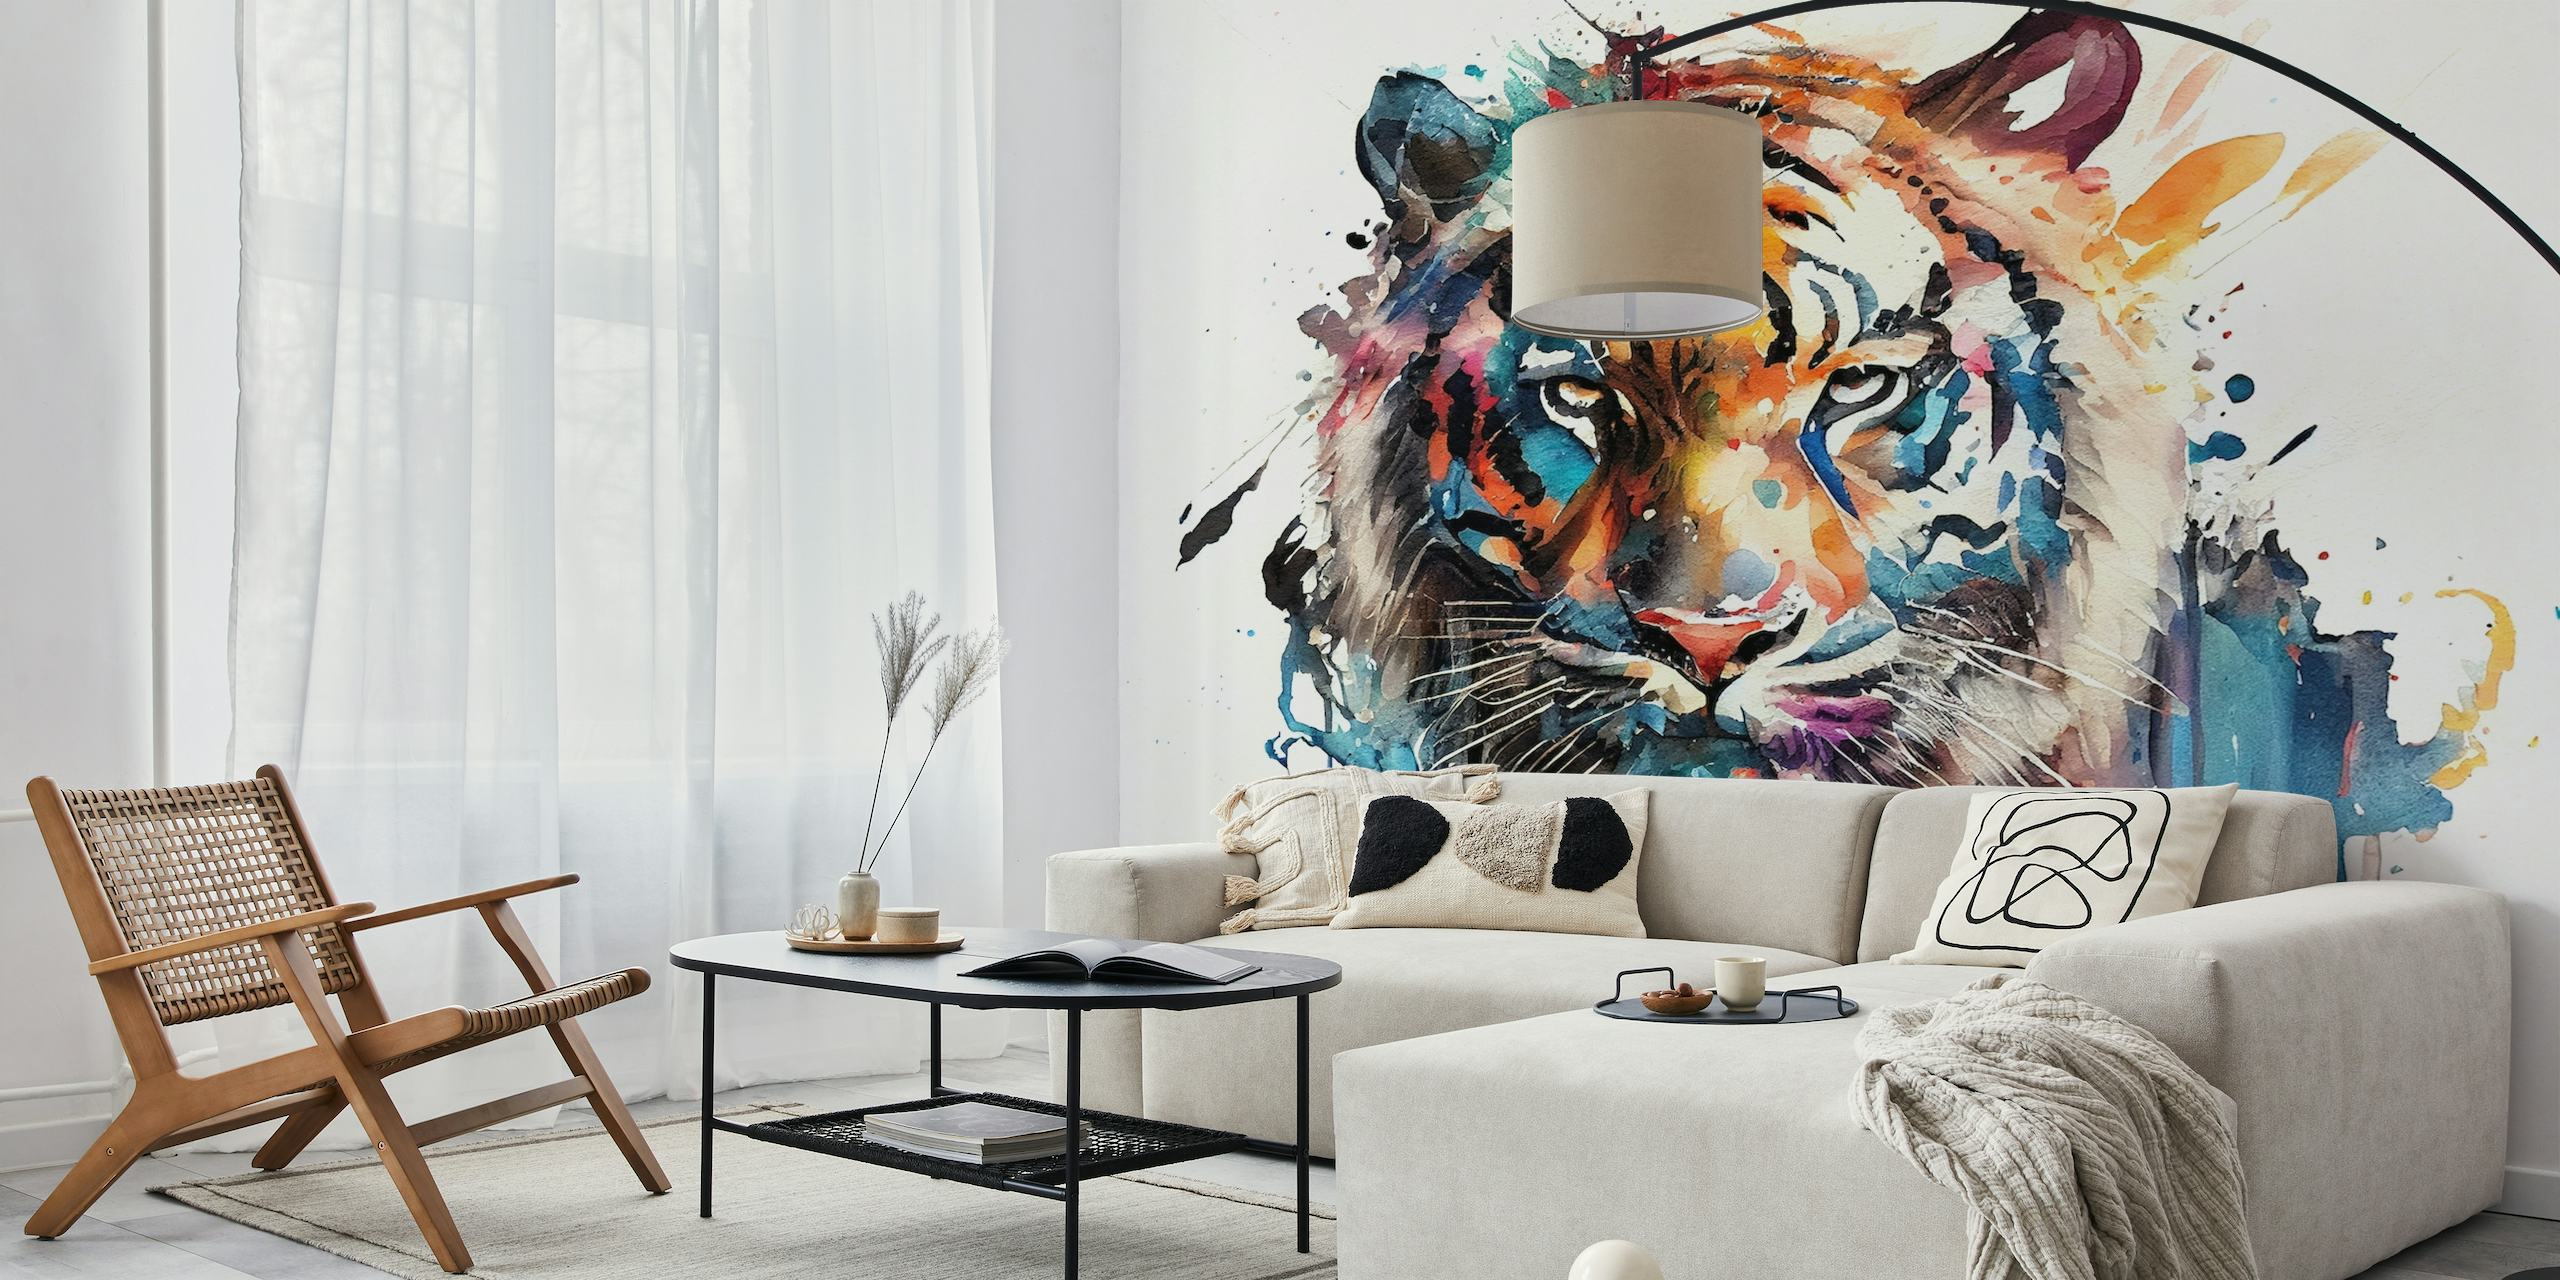 Et akvarelmaleri af en tiger med en blanding af livlige farver mod en hvid baggrund, forvandlet til et vægmaleri.